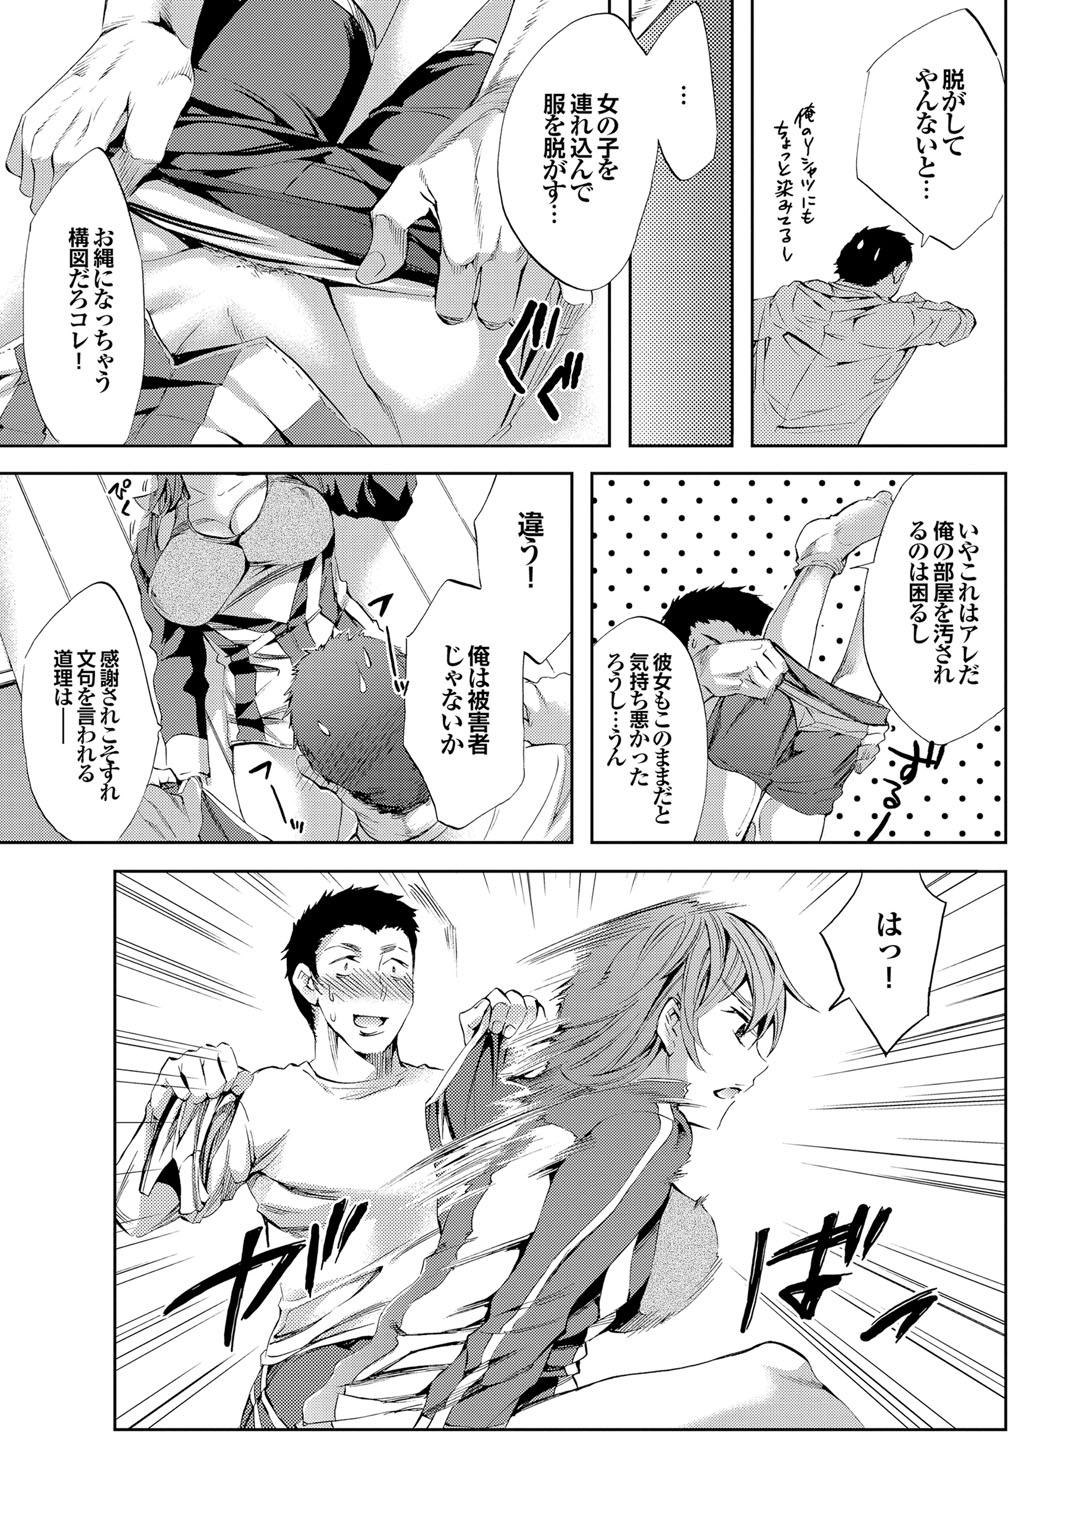 Sports Bishoujo to Seikou vol. 1 16